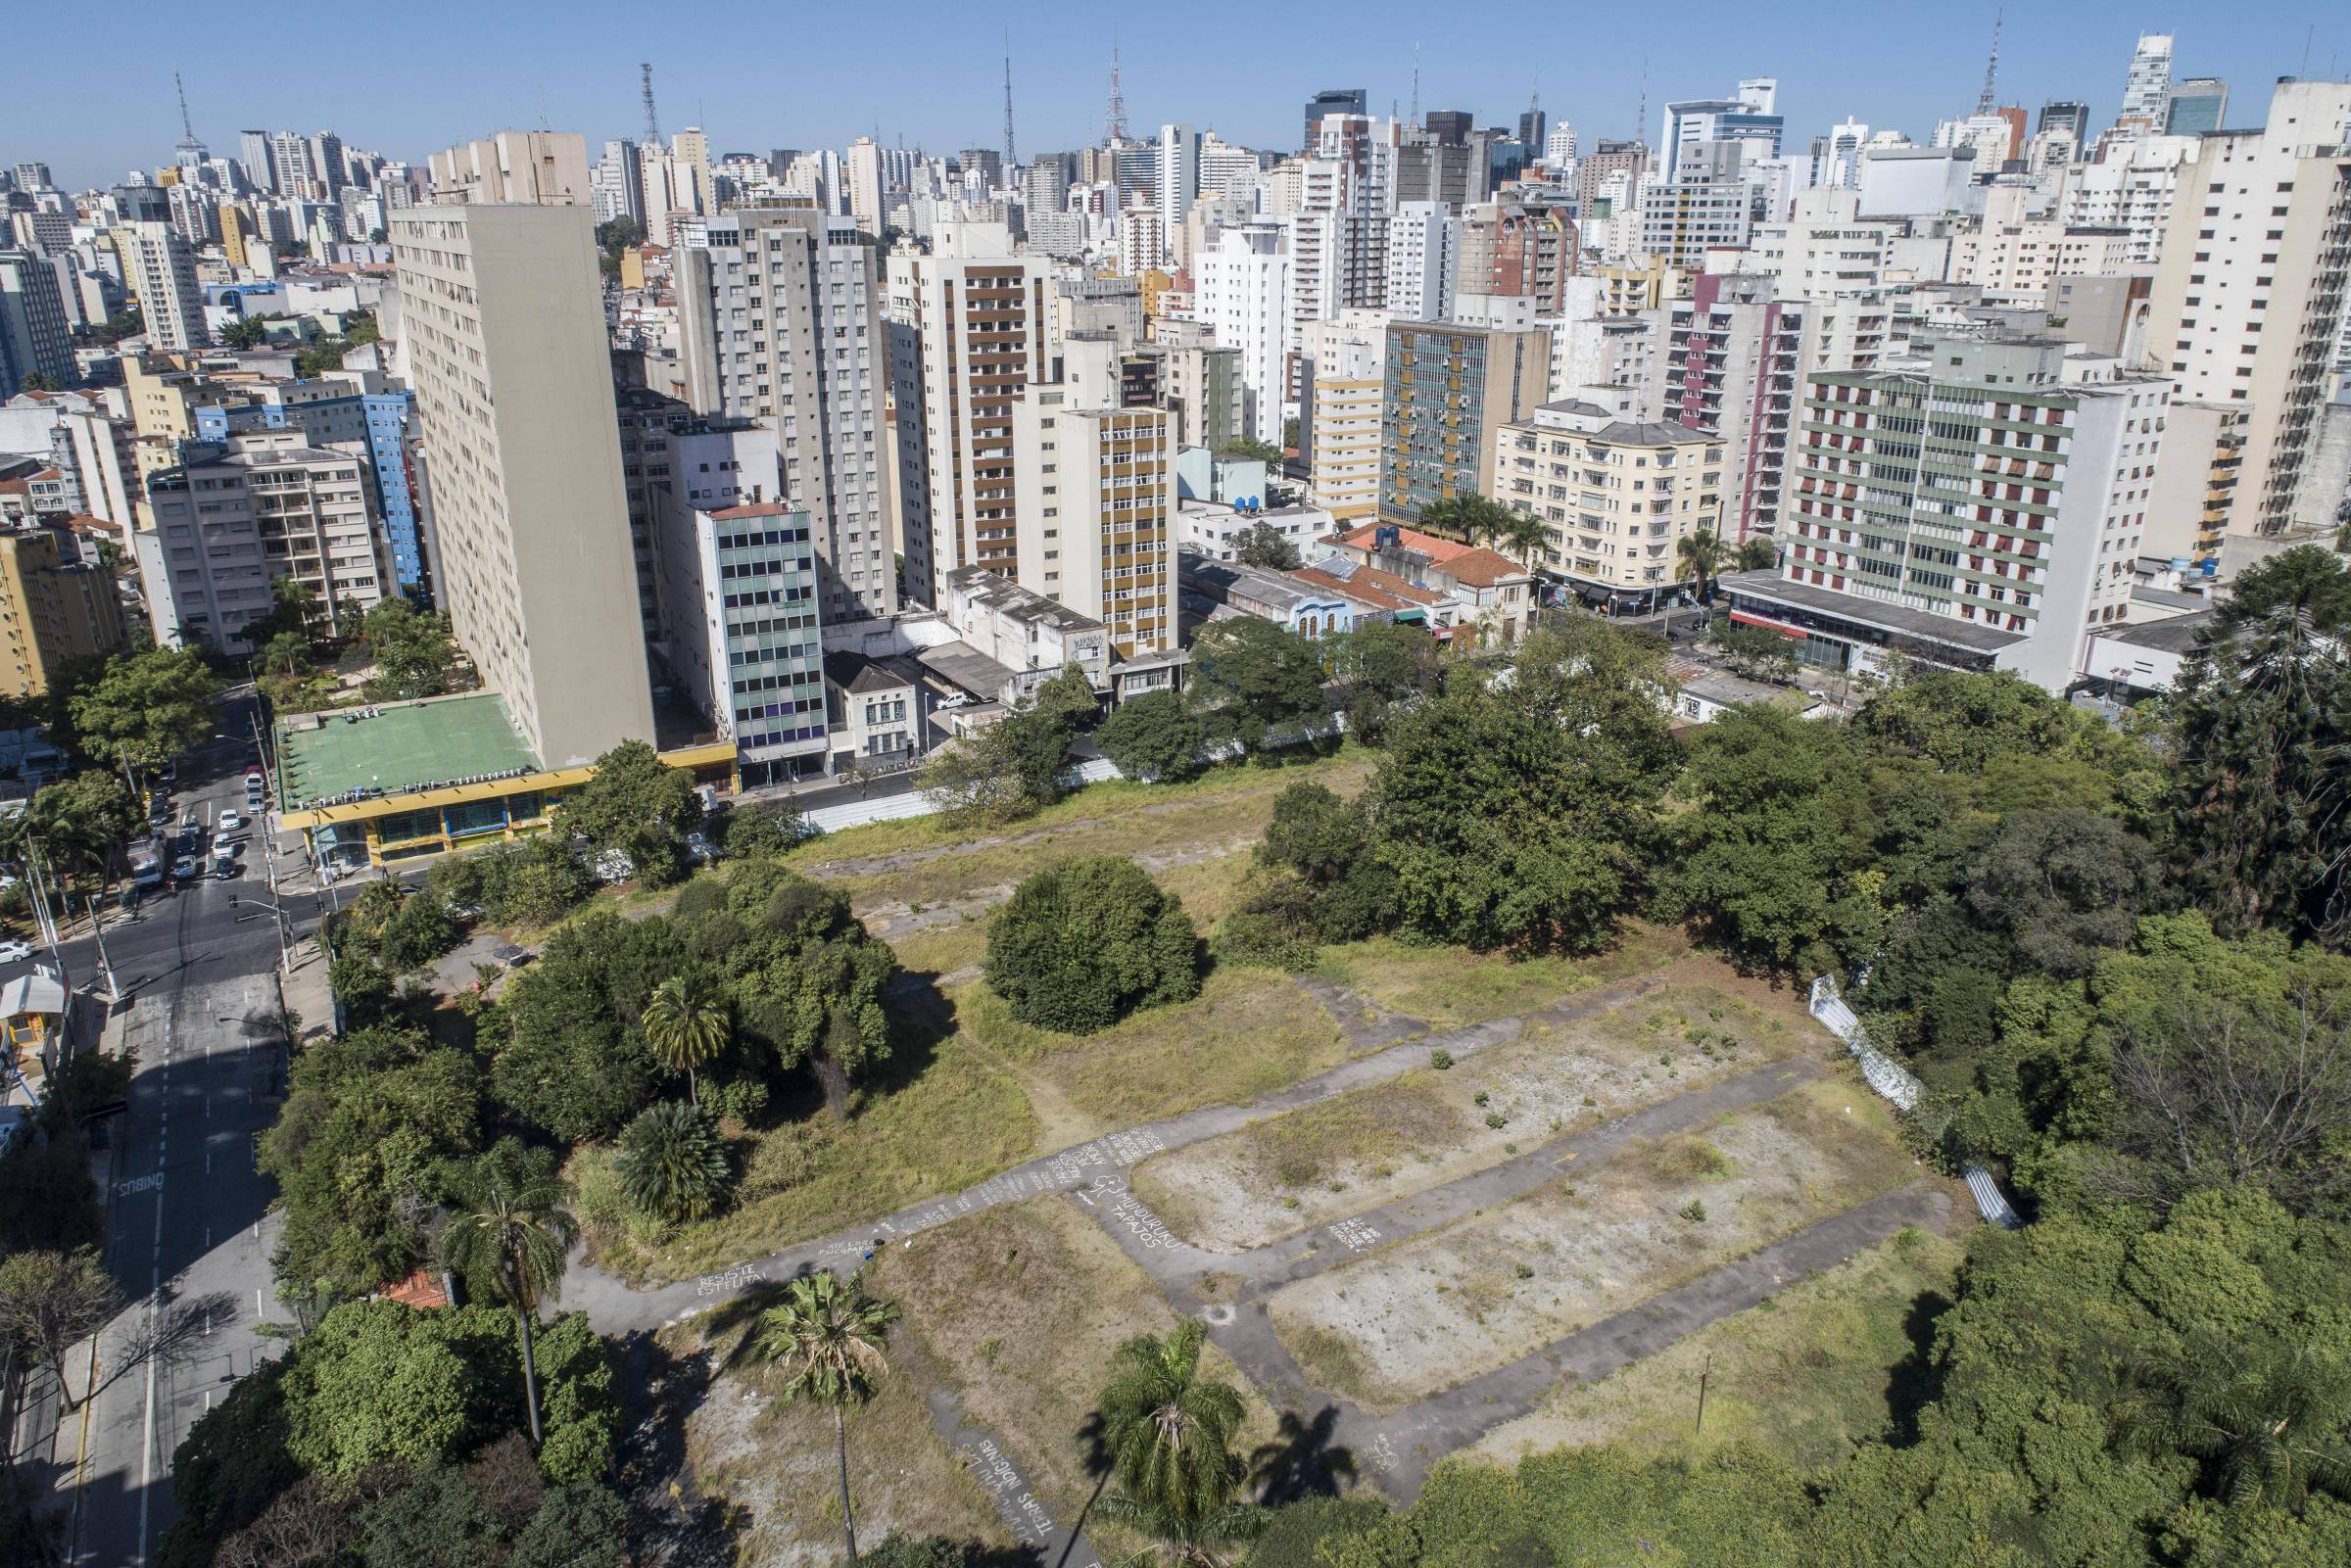 Parque Augusta: em 2002, o Plano Diretor prevê implantação do Parque Augusta no local. Foto: Felipe Rau / Estadão.